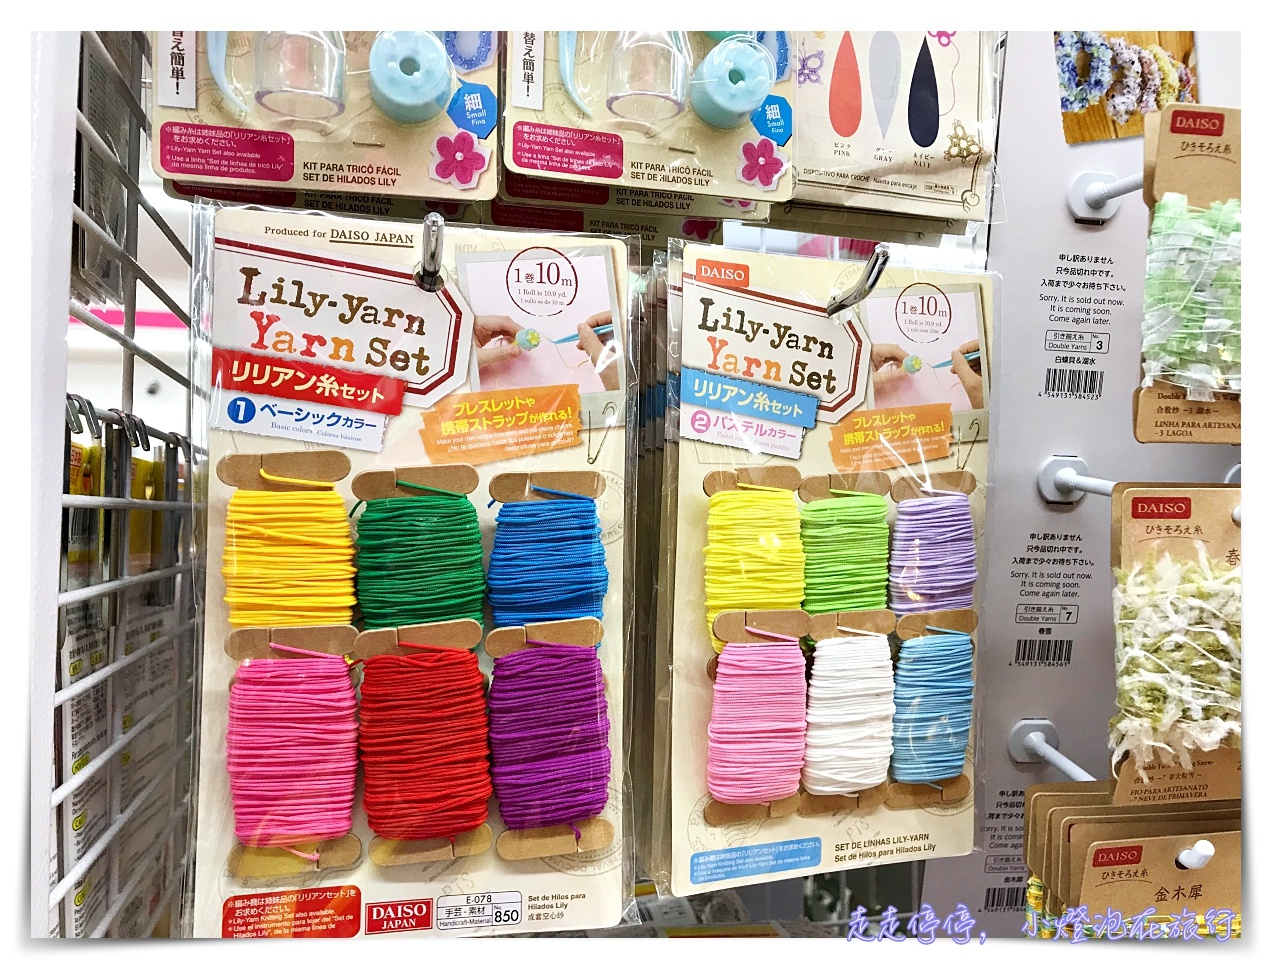 日本大創Daiso採買｜什麼玩意兒都只要108円日幣起～手撕膠帶、溫度變色杯、吸管眼鏡、煮蛋器～通通都好玩